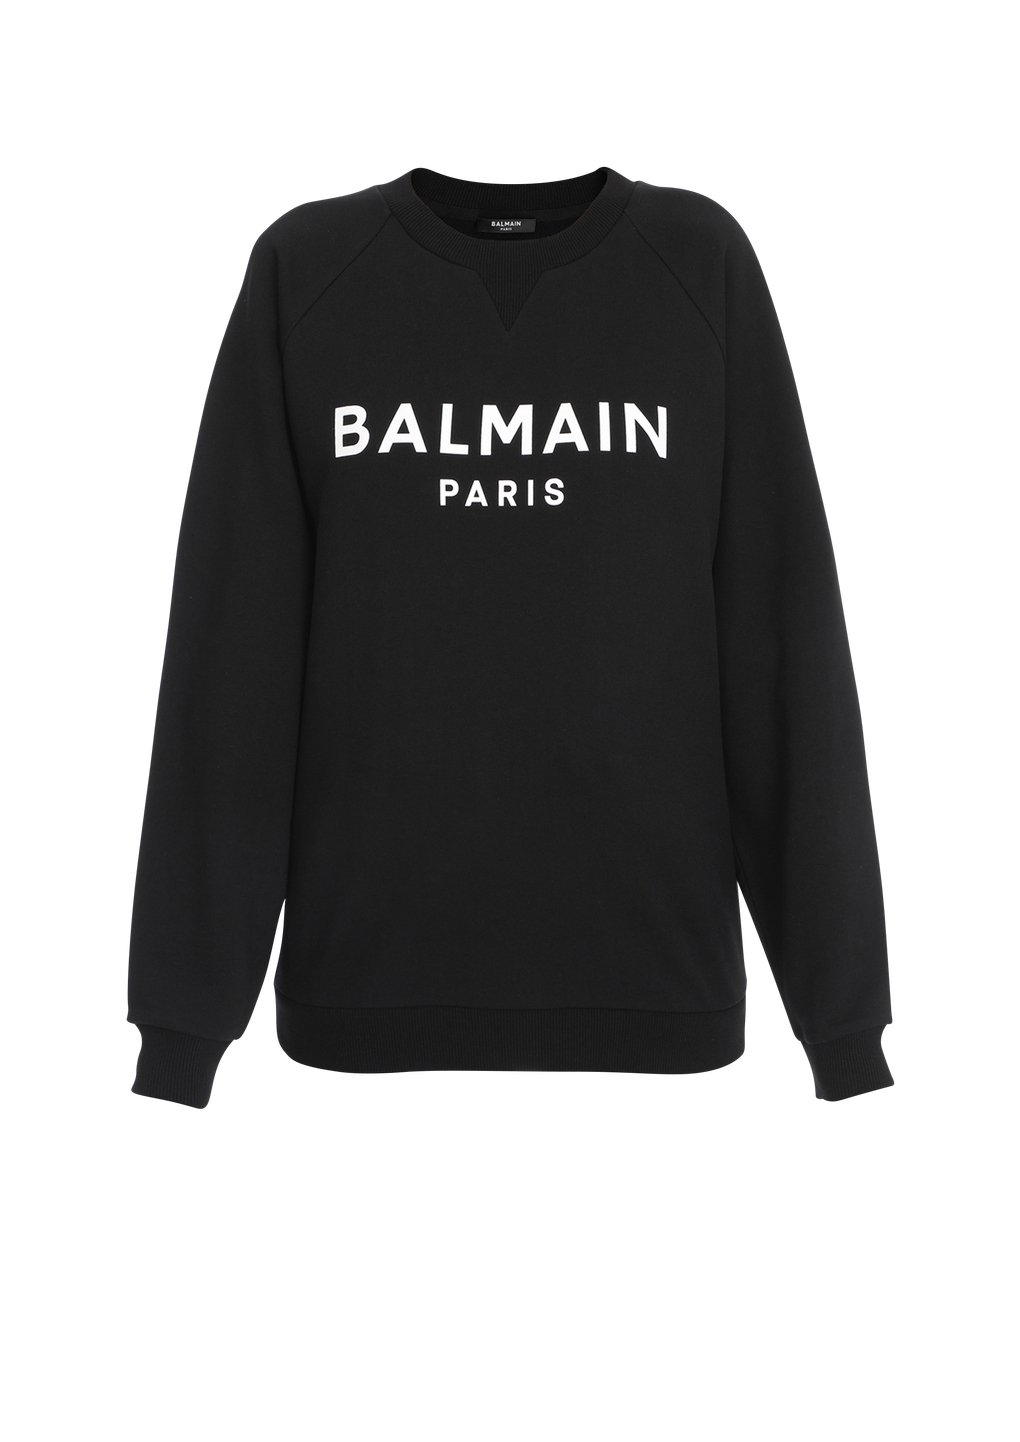 Sweat en coton avec logo imprimé Balmain, noir, hi-res